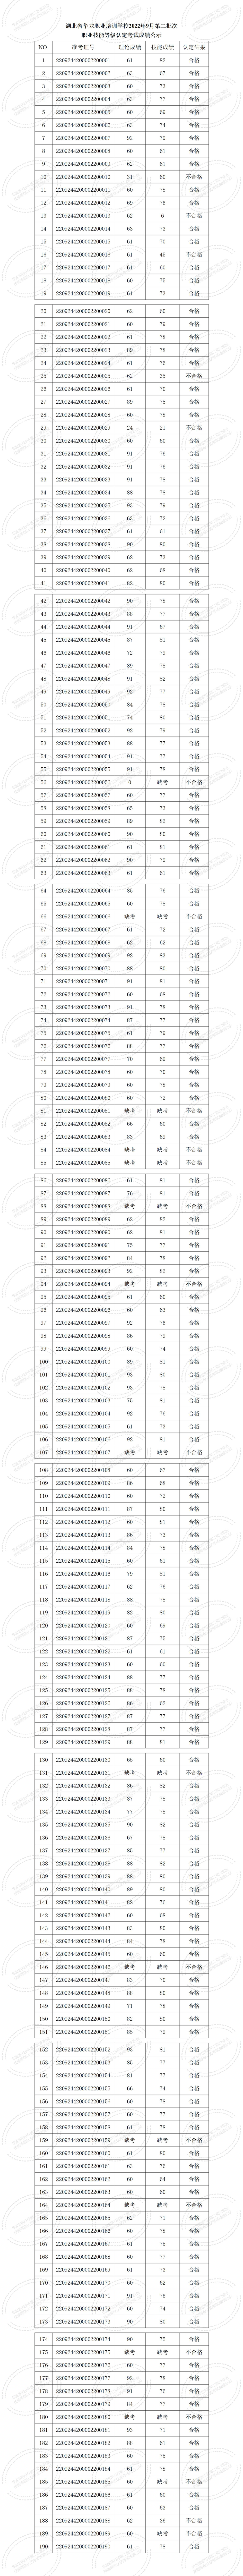 湖北省华龙职业培训学校2022年9月职业技能等级认定考试成绩公示 (1)_01